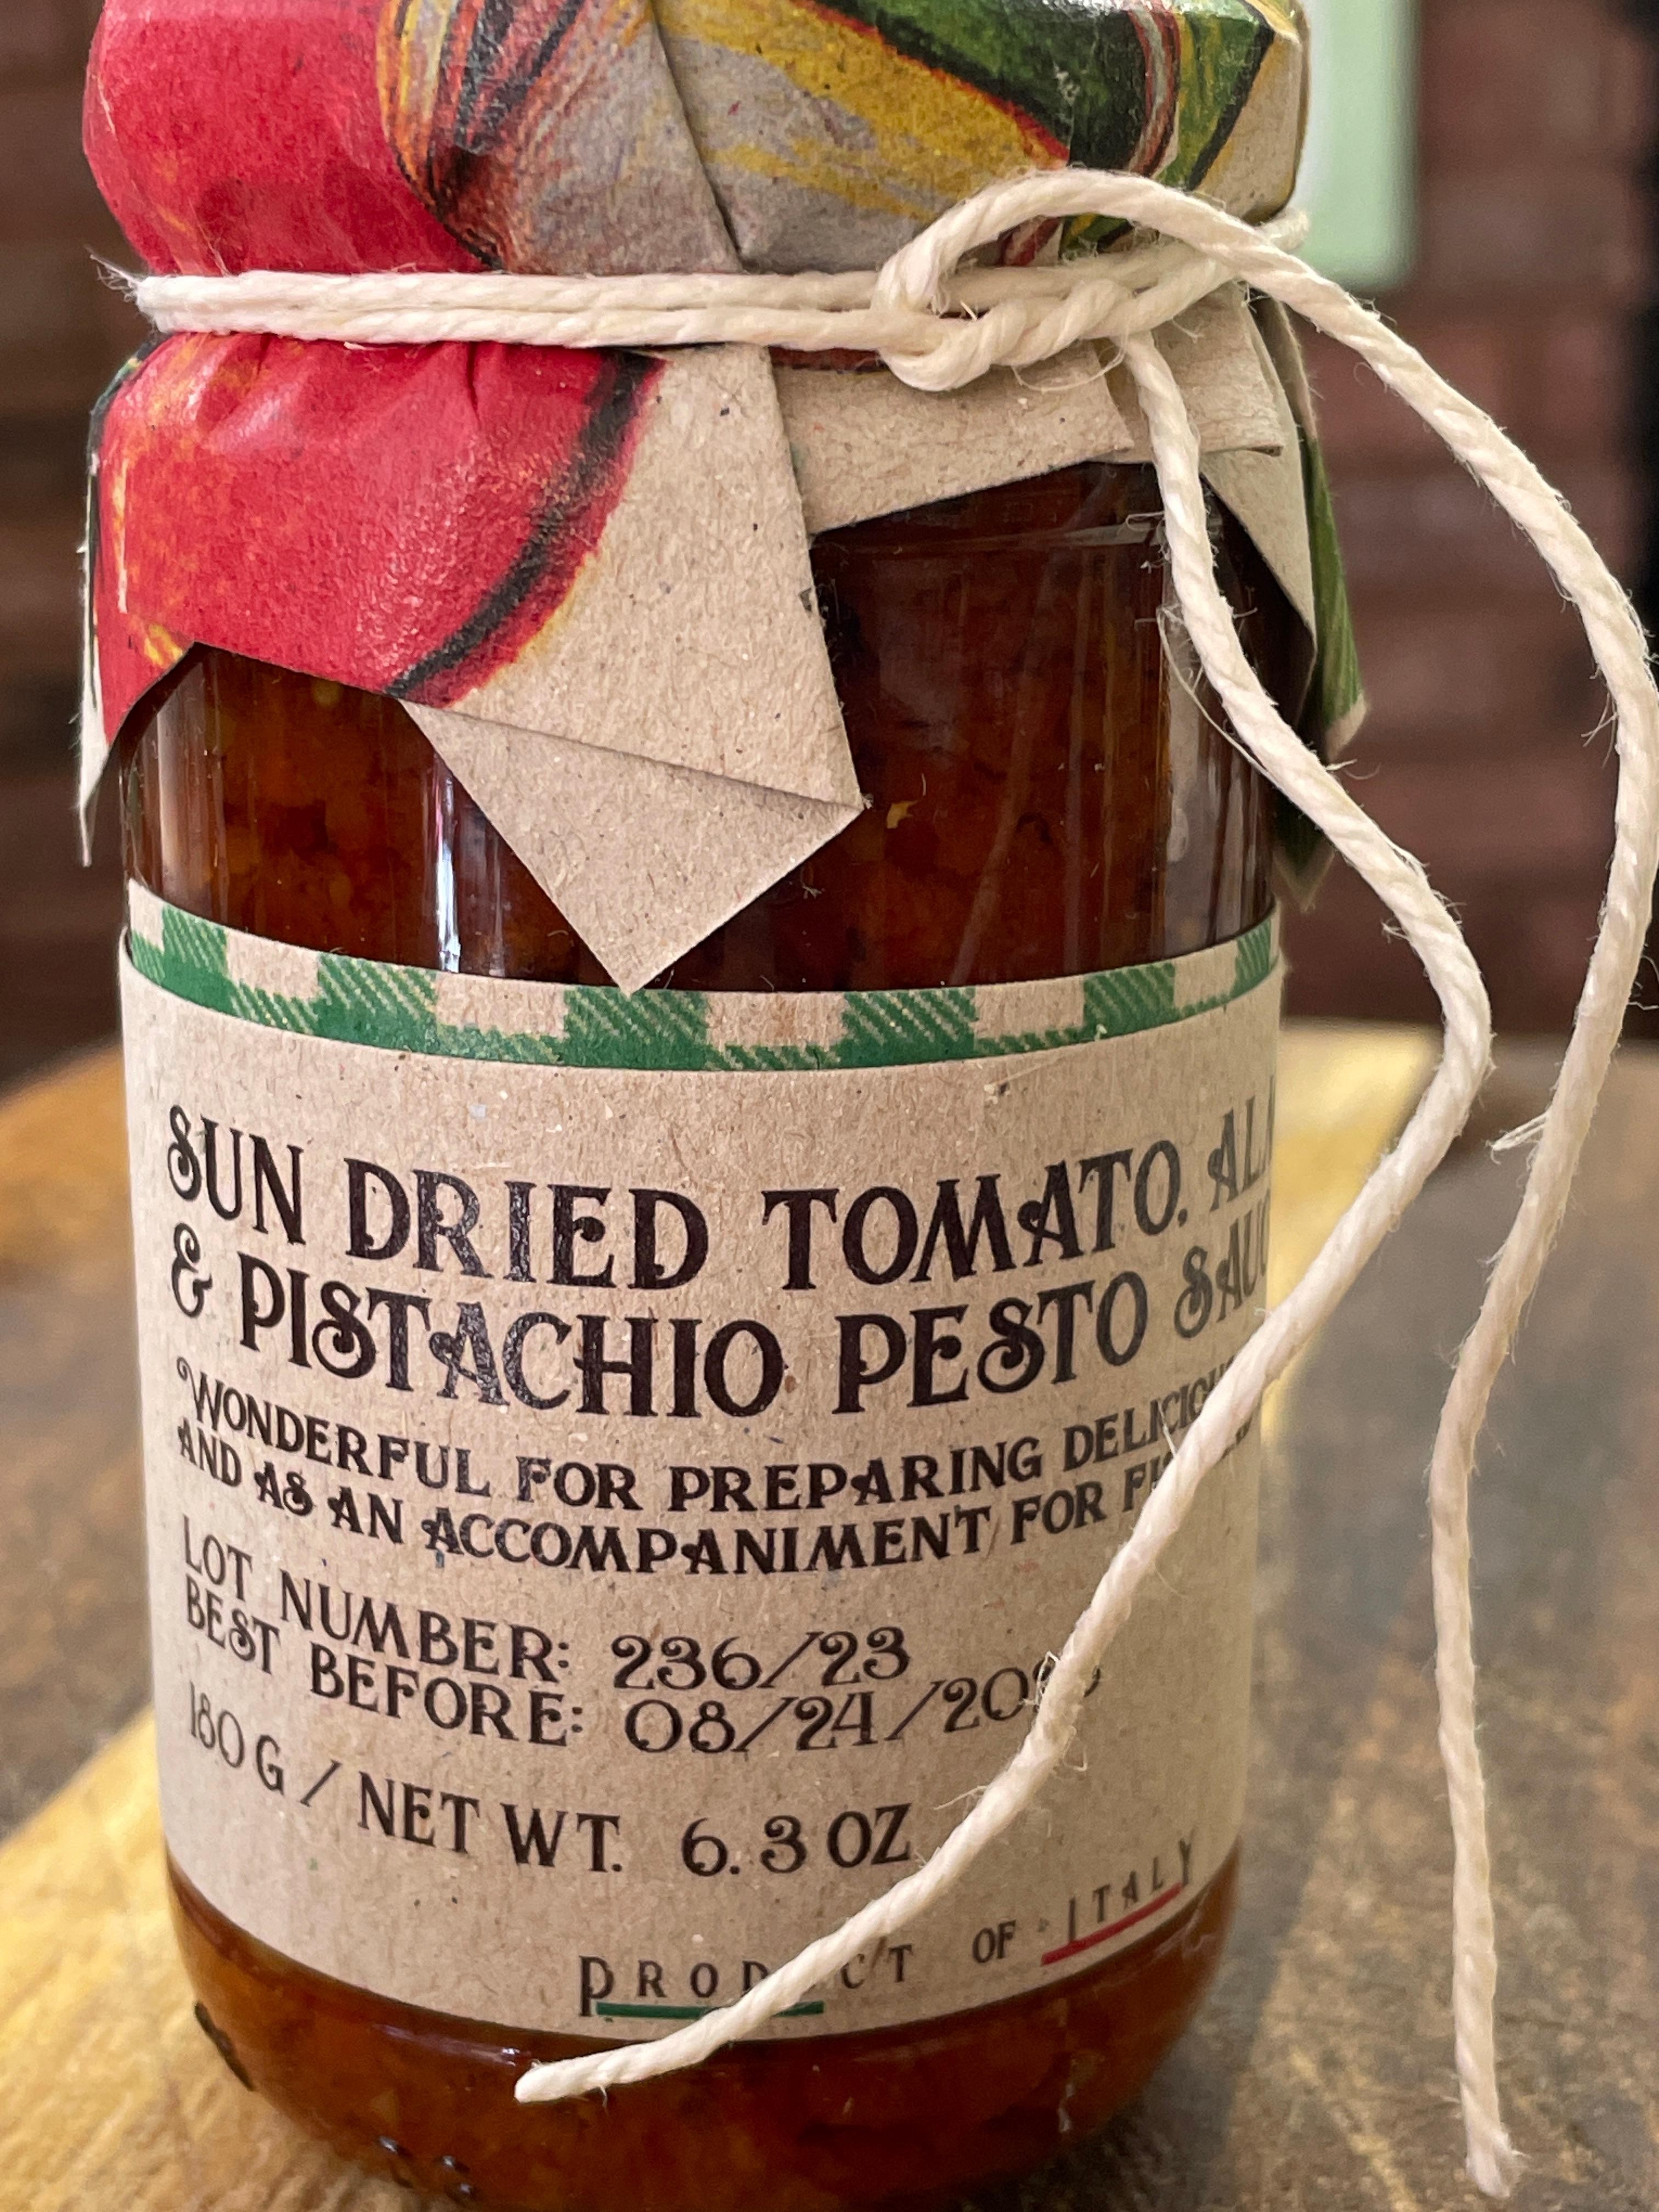 Sun dried Almond Pistachios sauce